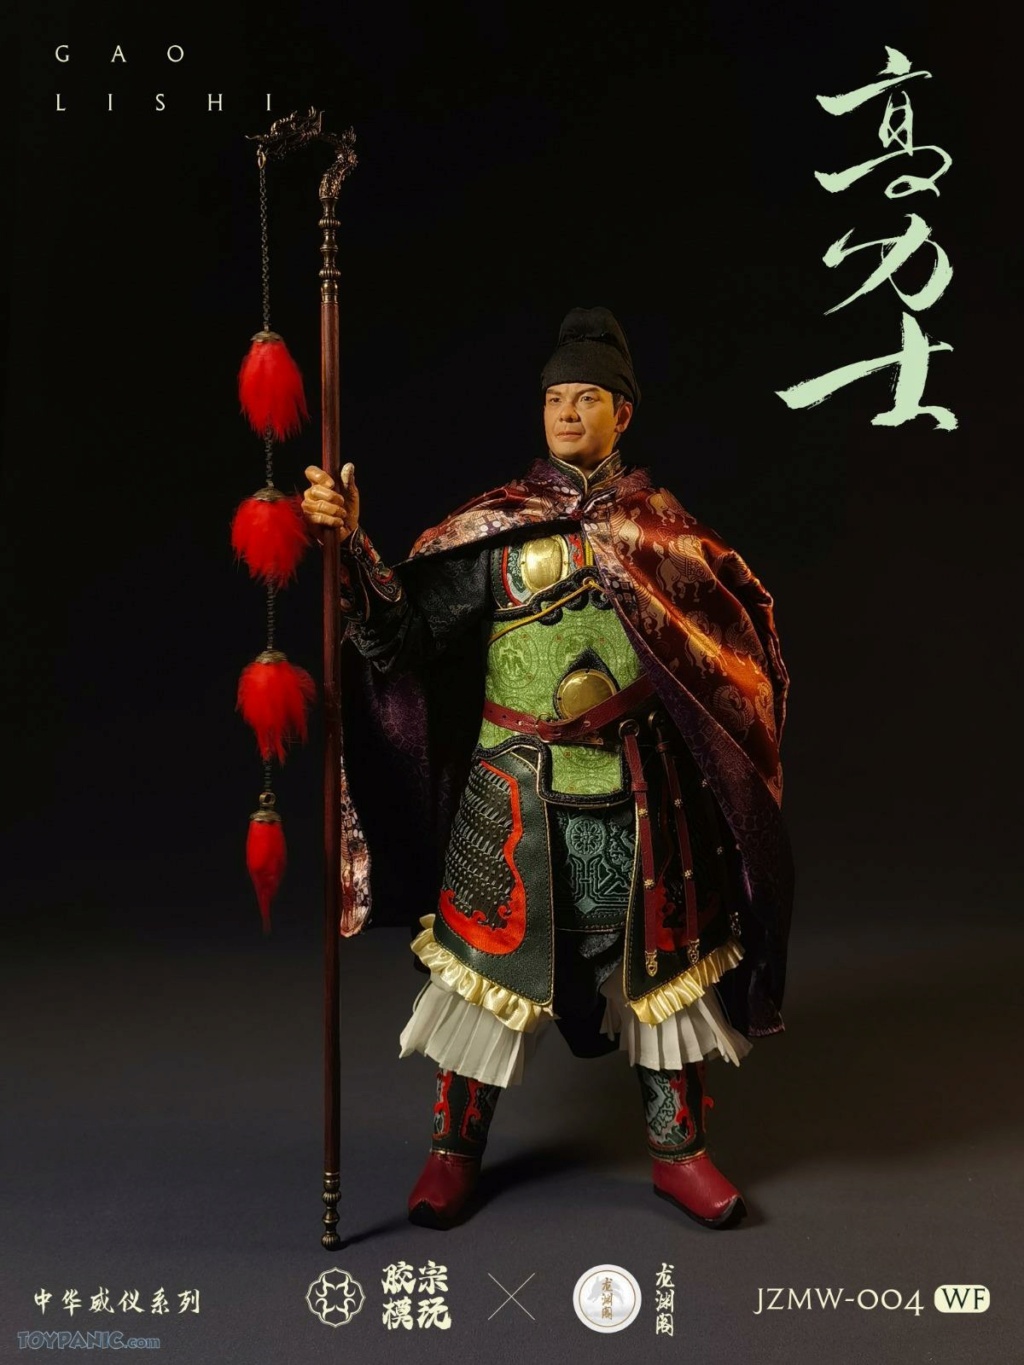 JiaoZongmoPlaying - NEW PRODUCT: Jiao Zongmo Playing: 1/6 Venue Edition Chinese Majesty Series: Gao Lishi (JZMW-004WF) 91020217